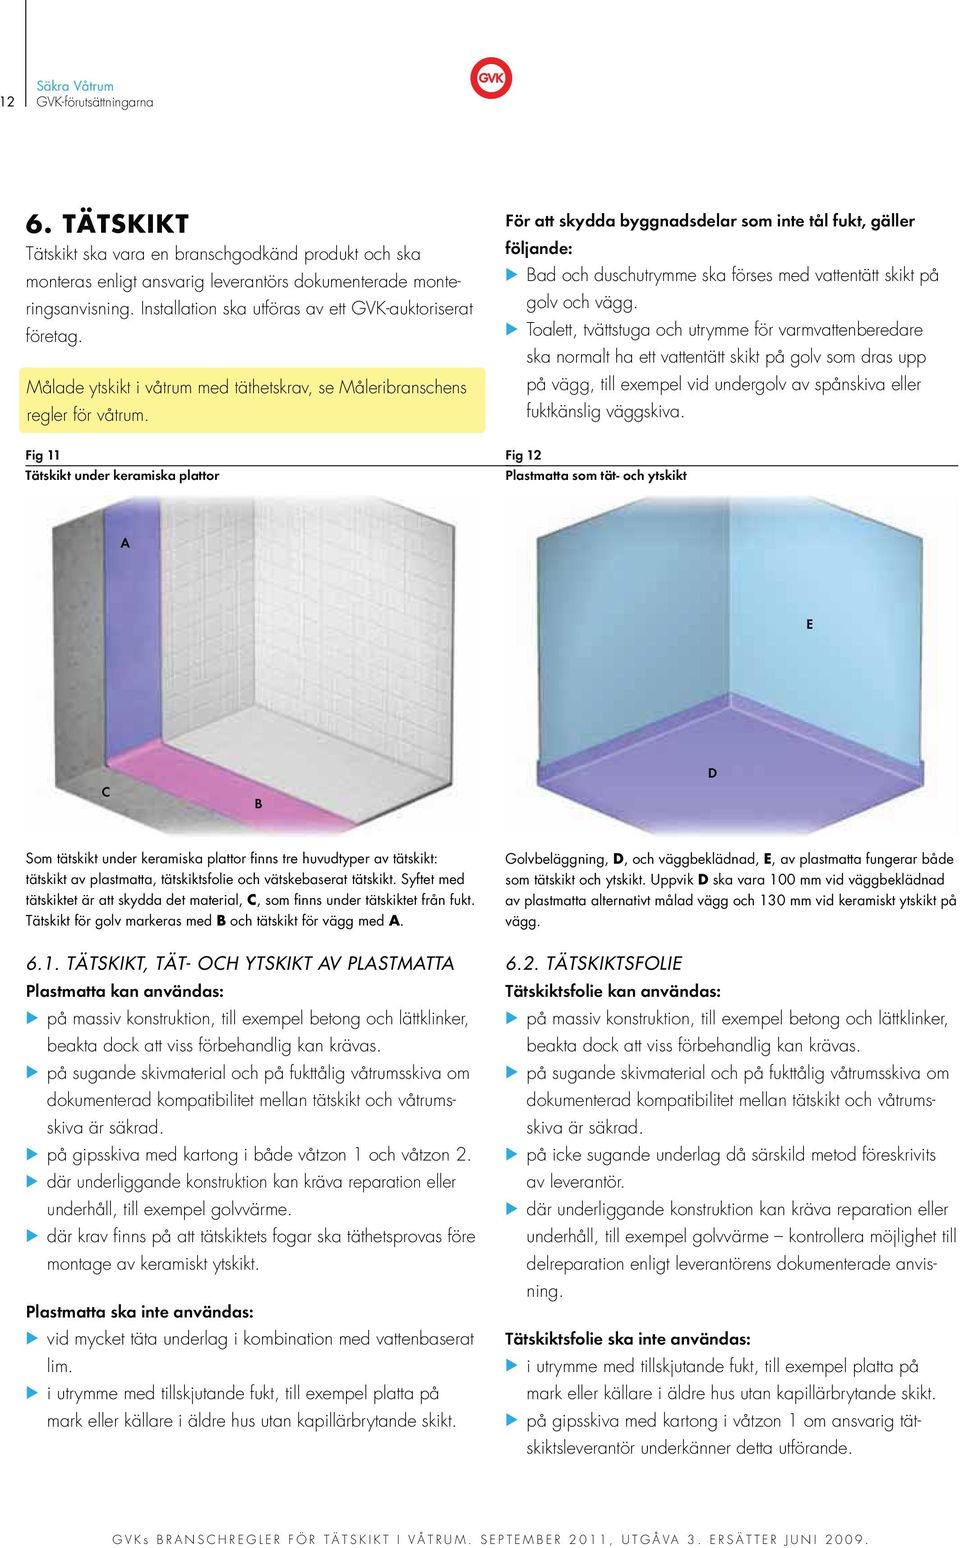 Fig 11 Tätskikt under keramiska plattor För att skydda byggnadsdelar som inte tål fukt, gäller följande: Bad och duschutrymme ska förses med vattentätt skikt på golv och vägg.